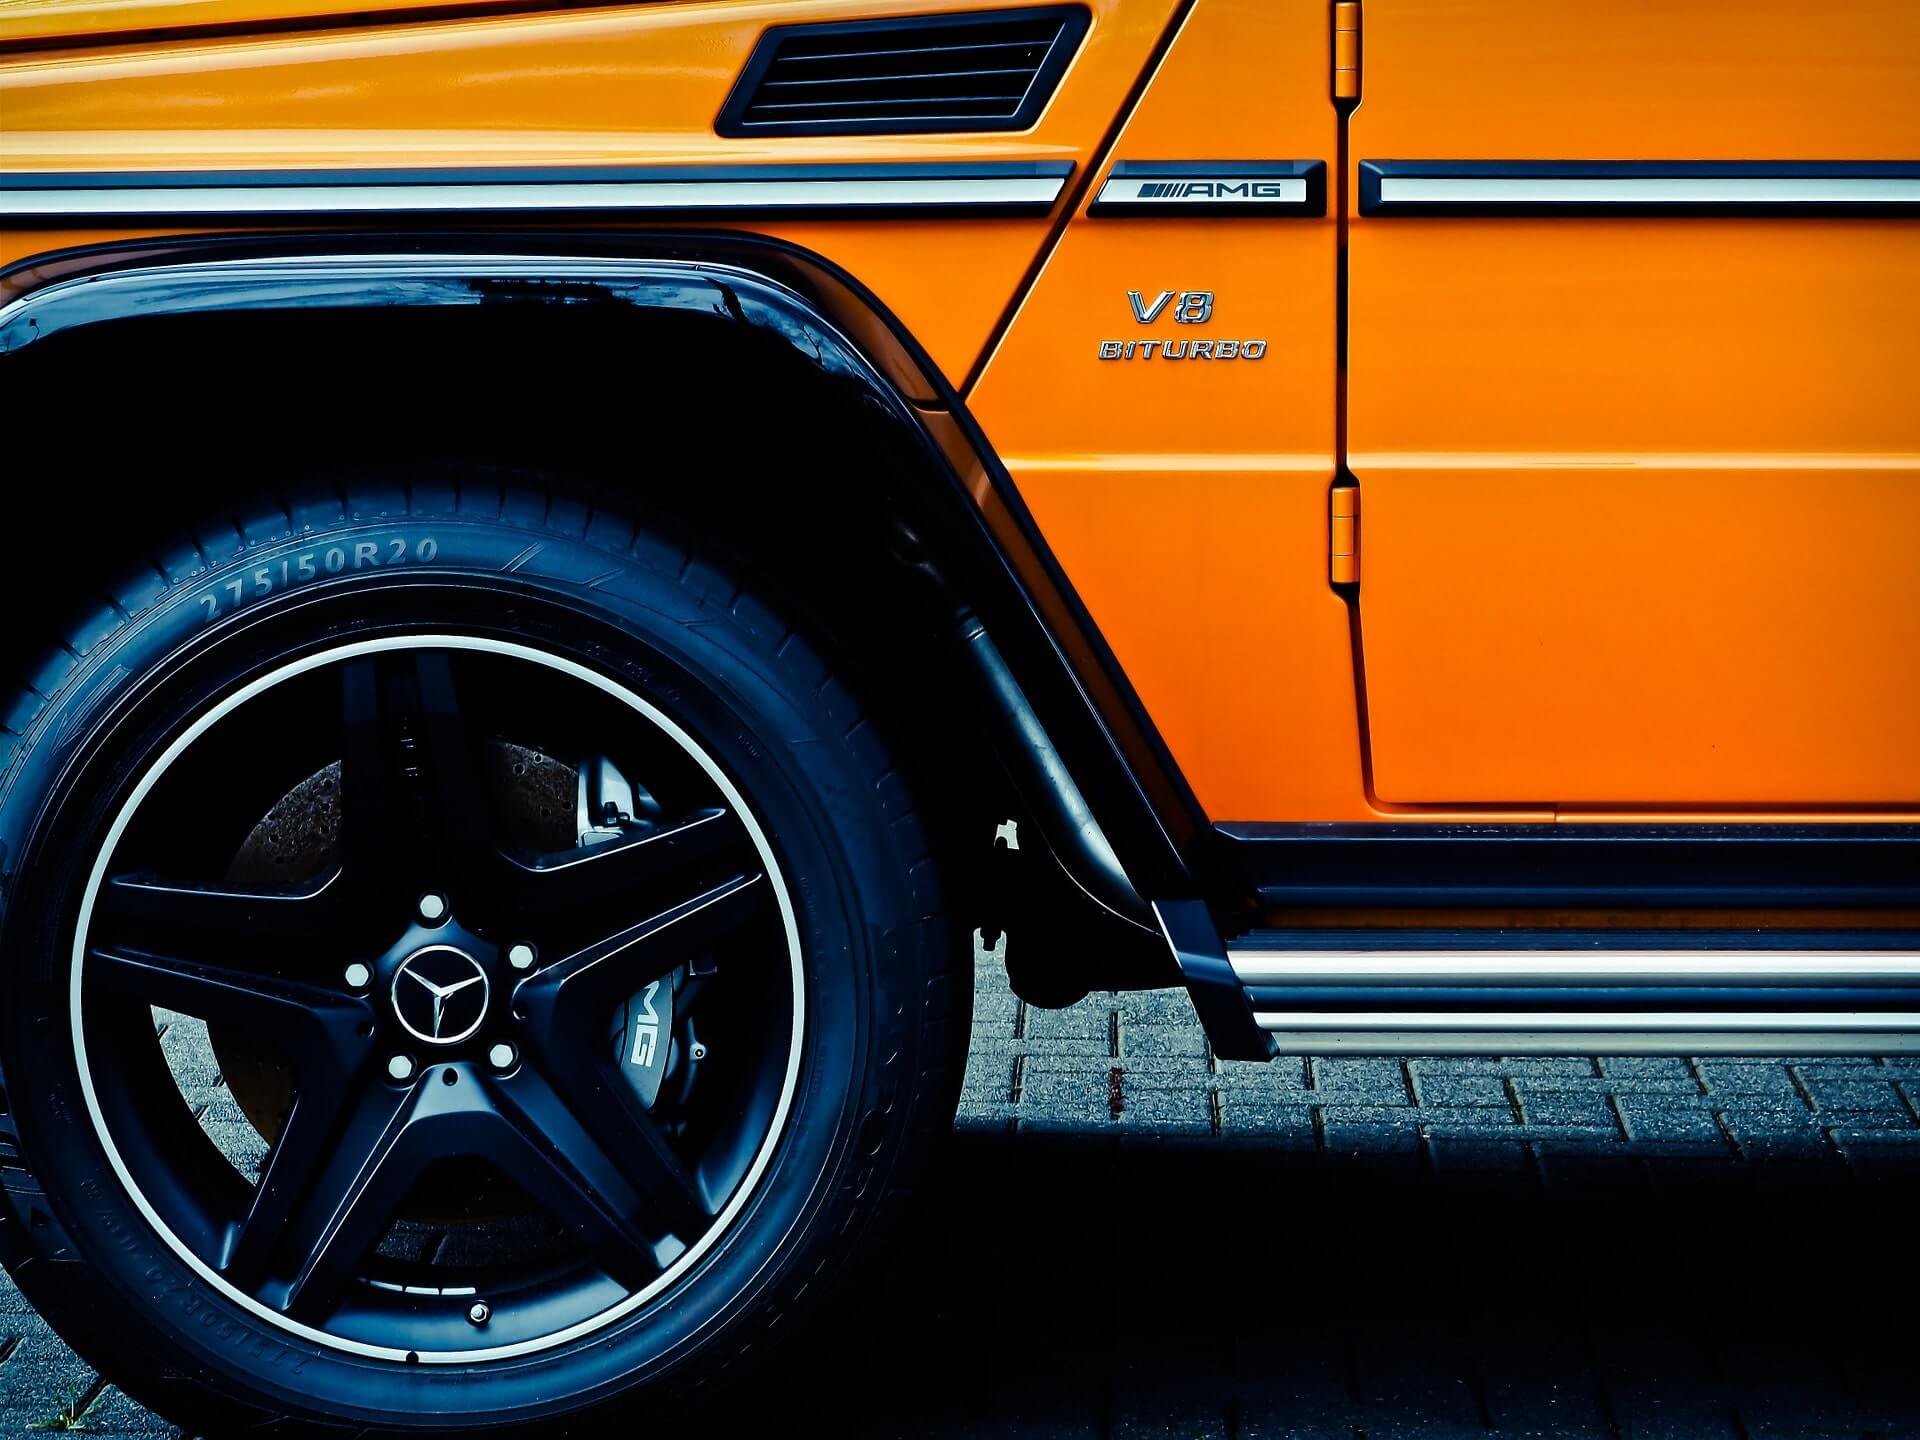 Roue avant gauche noire frappante, porte partielle brillante et marchepied argenté brillant d'un SUV orange